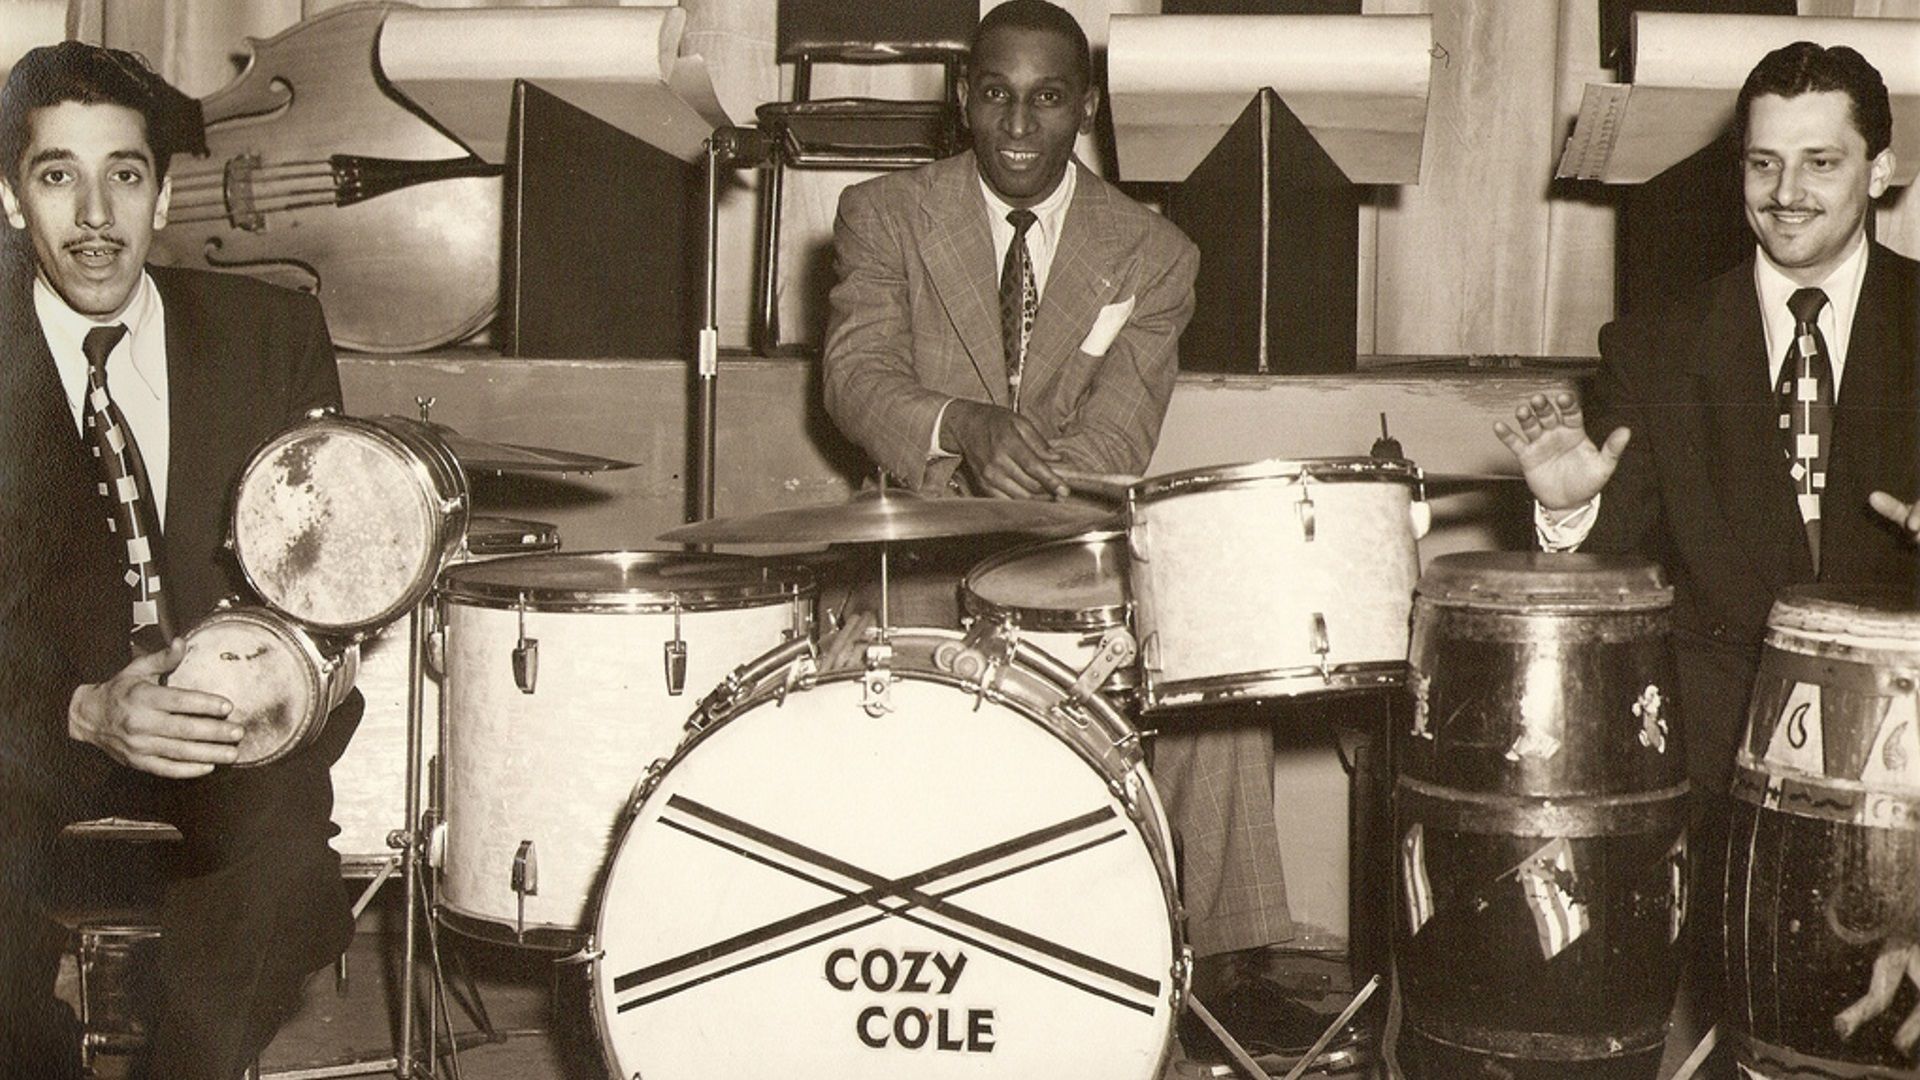 Le batteur Cozy Cole nous quittait il y a 40 ans